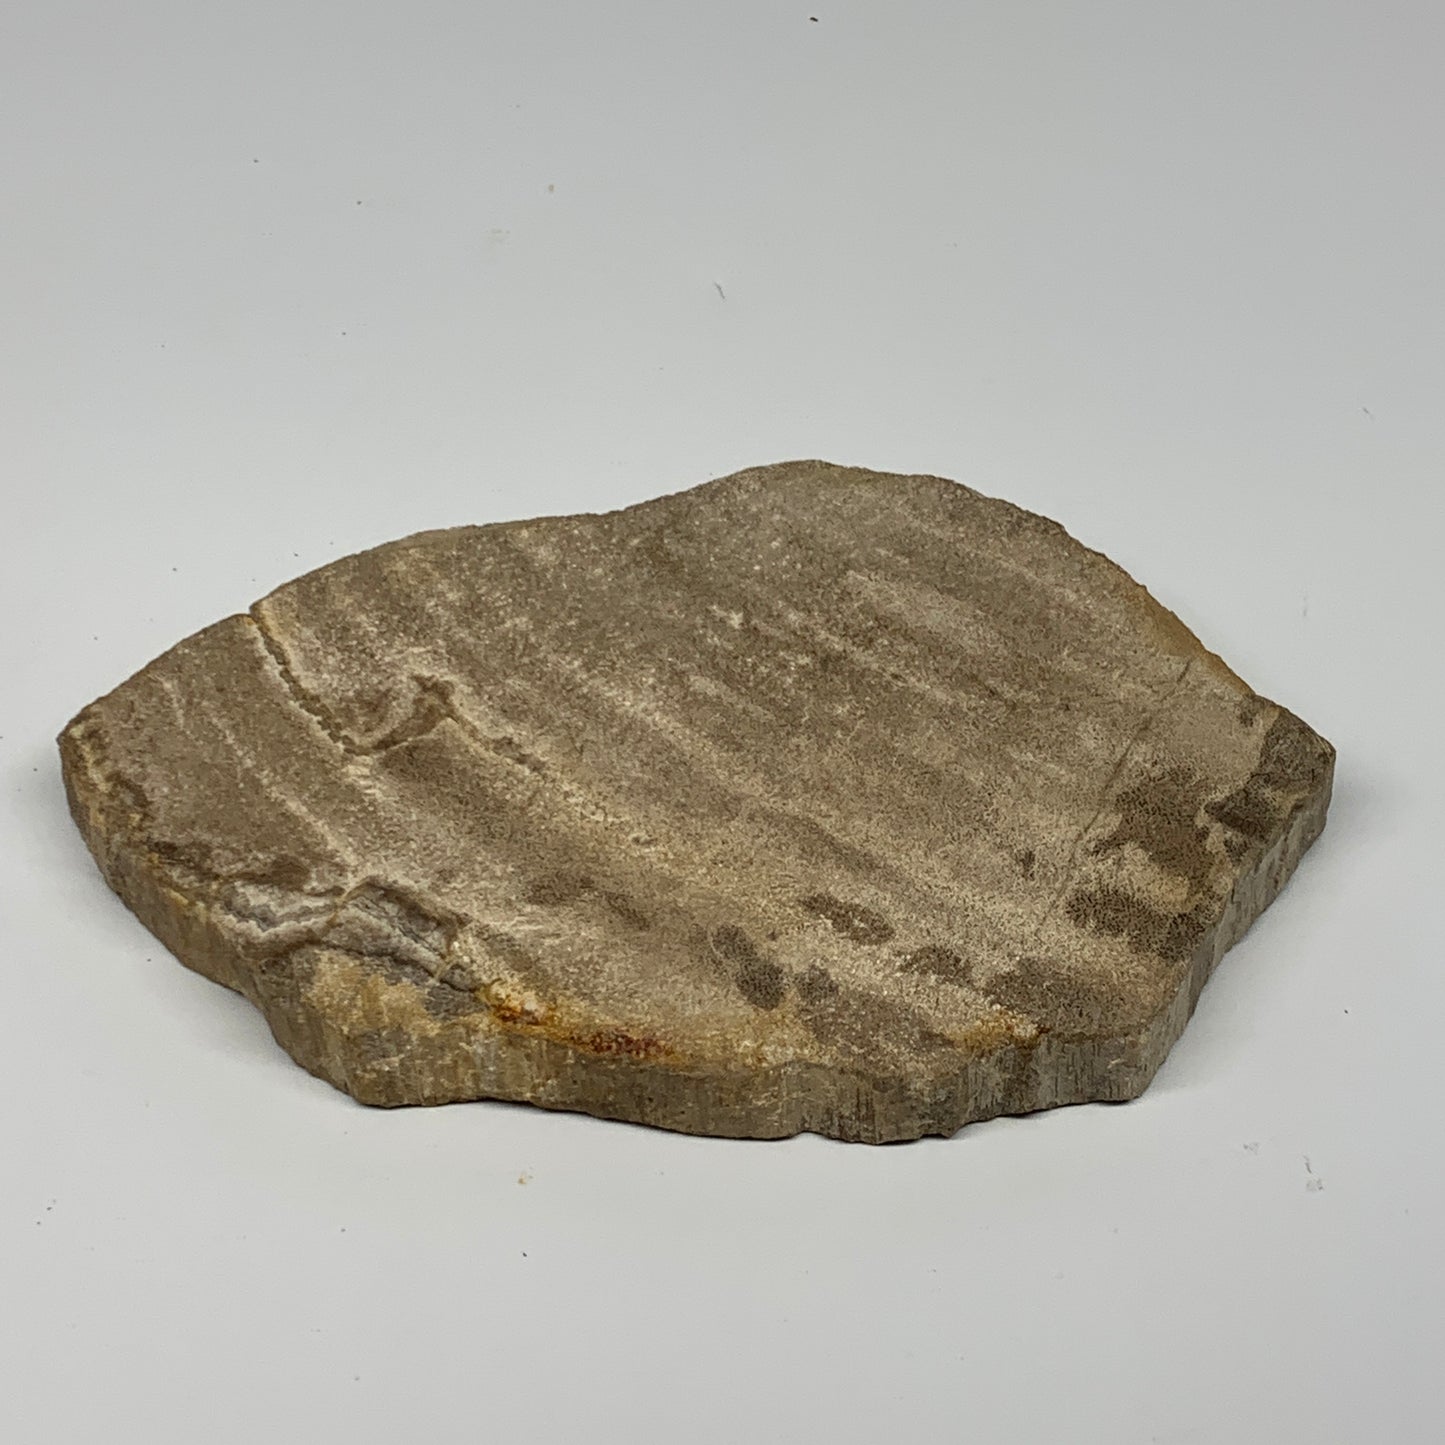 645g,7.5"x4.9"x0.7" Petrified Wood Slab Tree Branch Specimen, Minerals, B22678